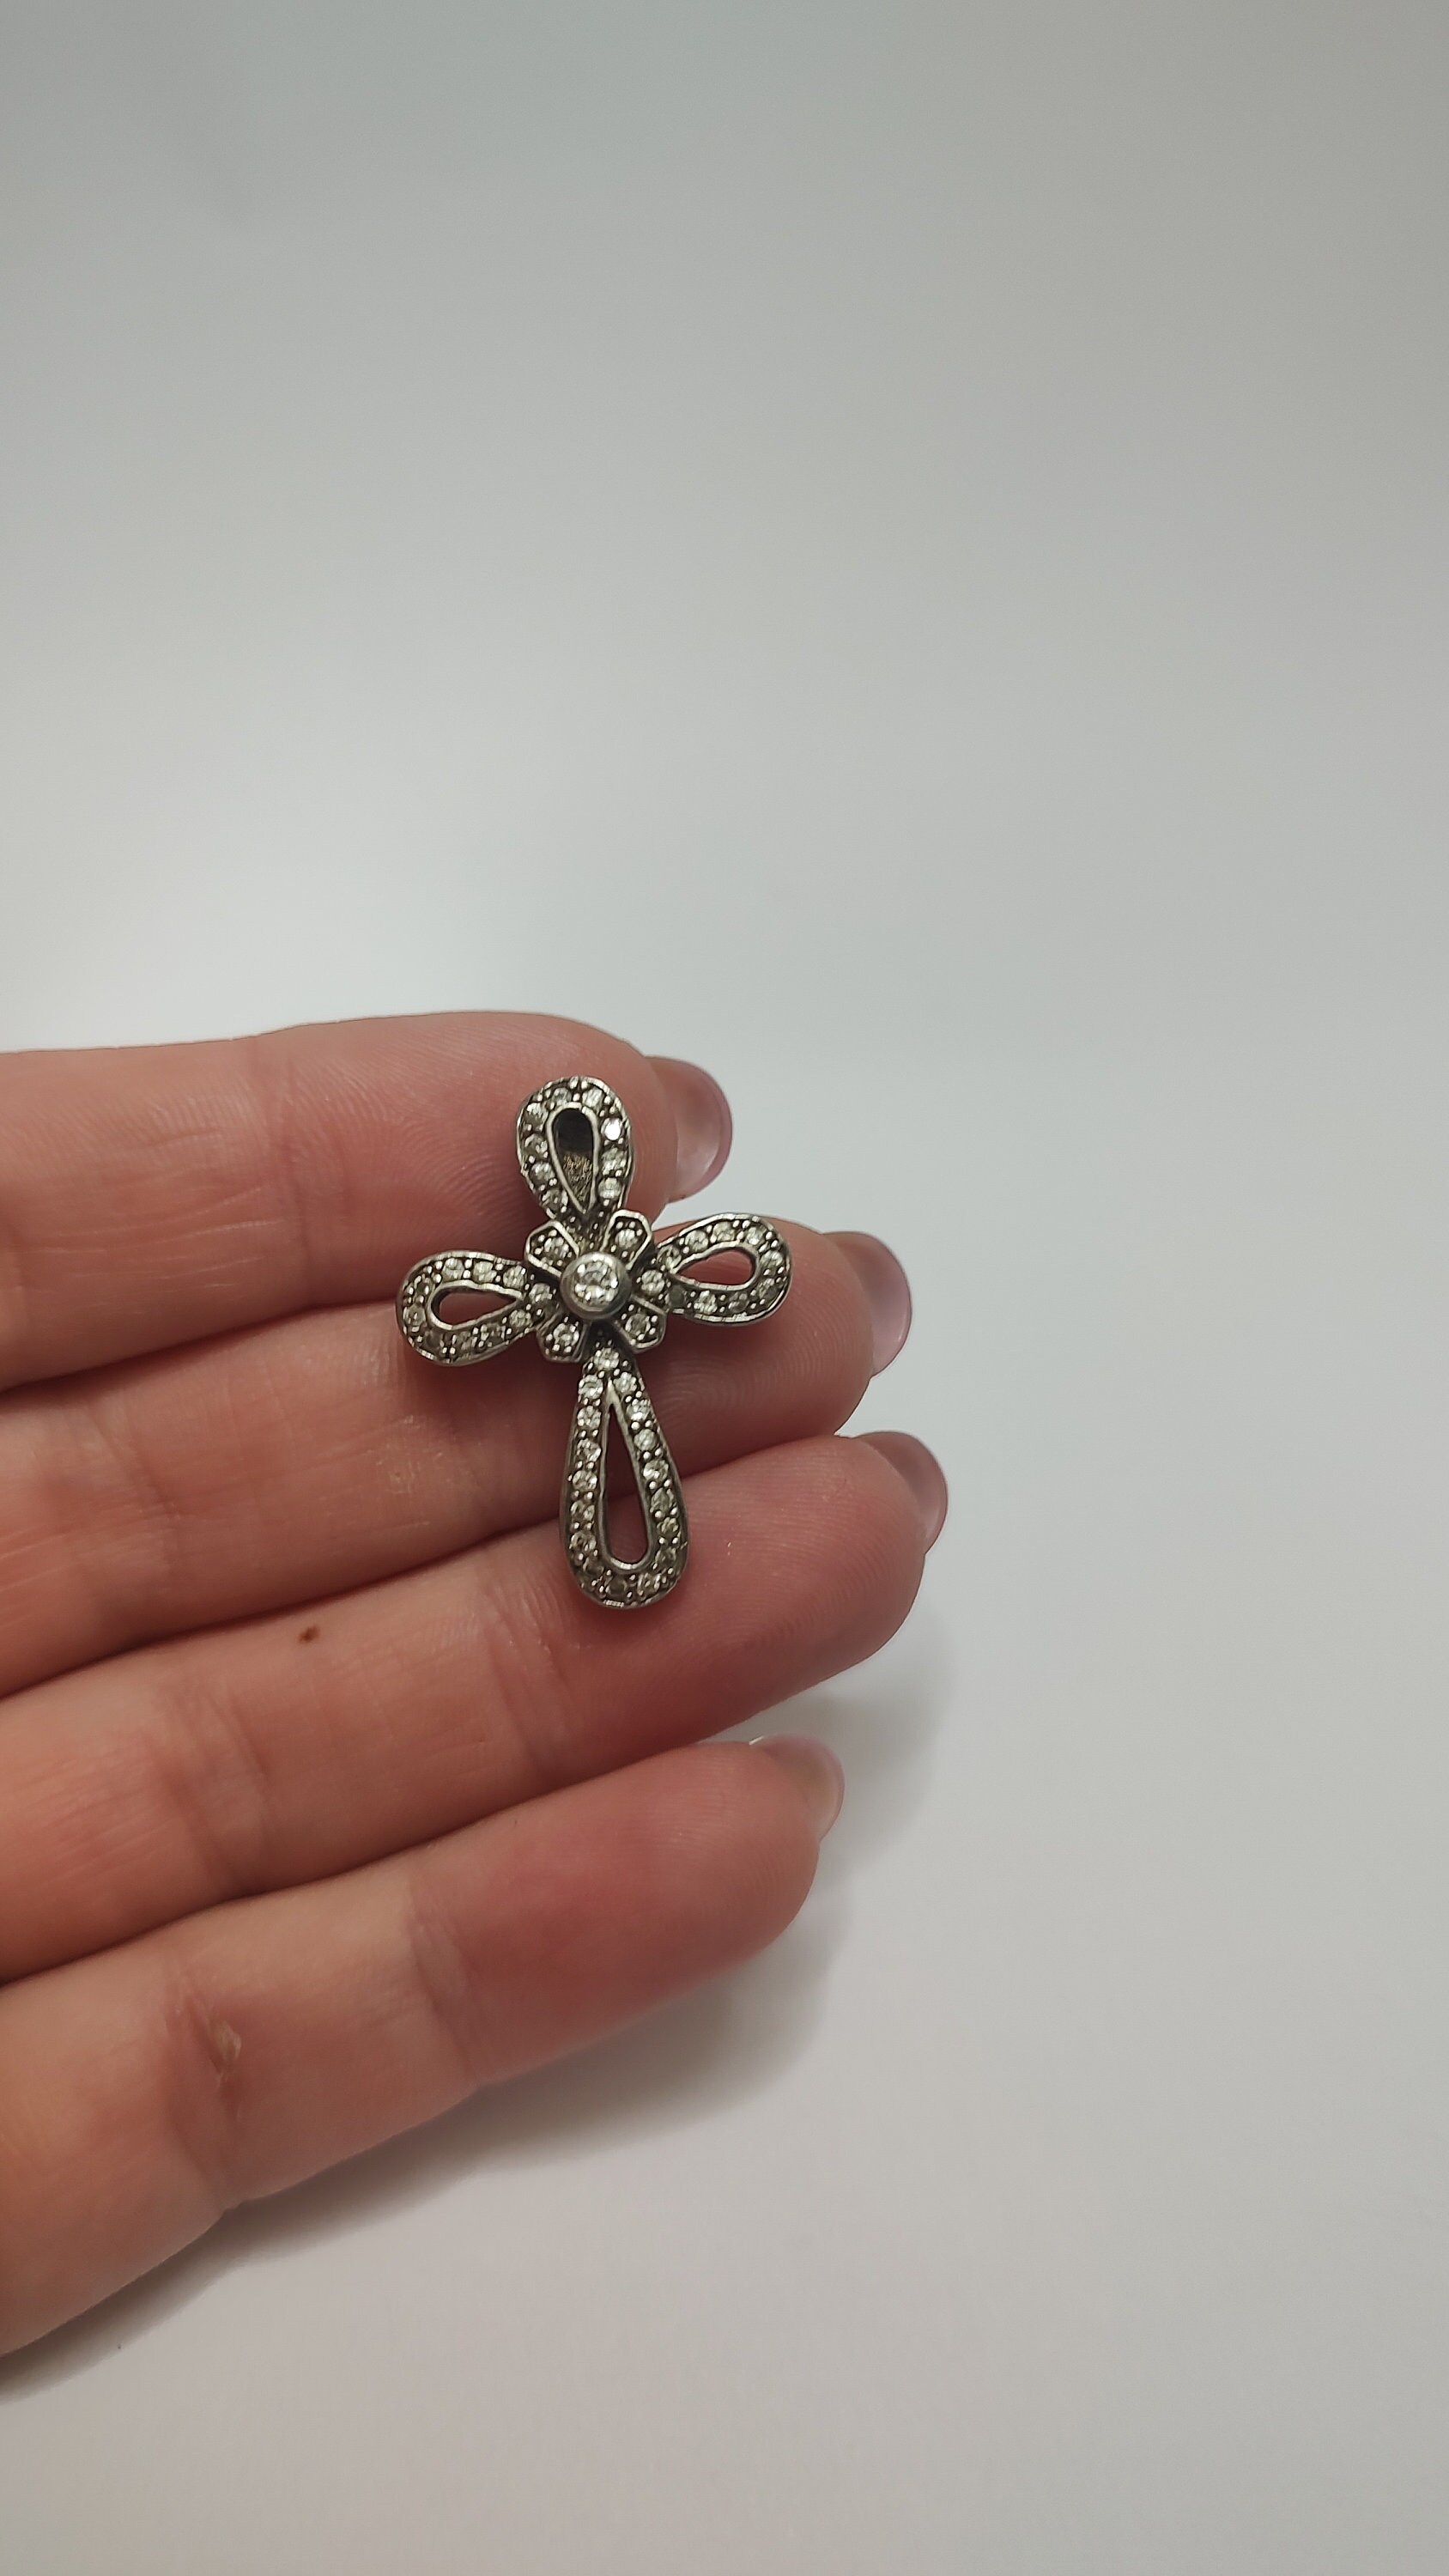 Kreuz Aus Sterlingsilber Mit Strasssteinen, Kreuzanhänger 925Er Silber von UniqueArtGiftStore